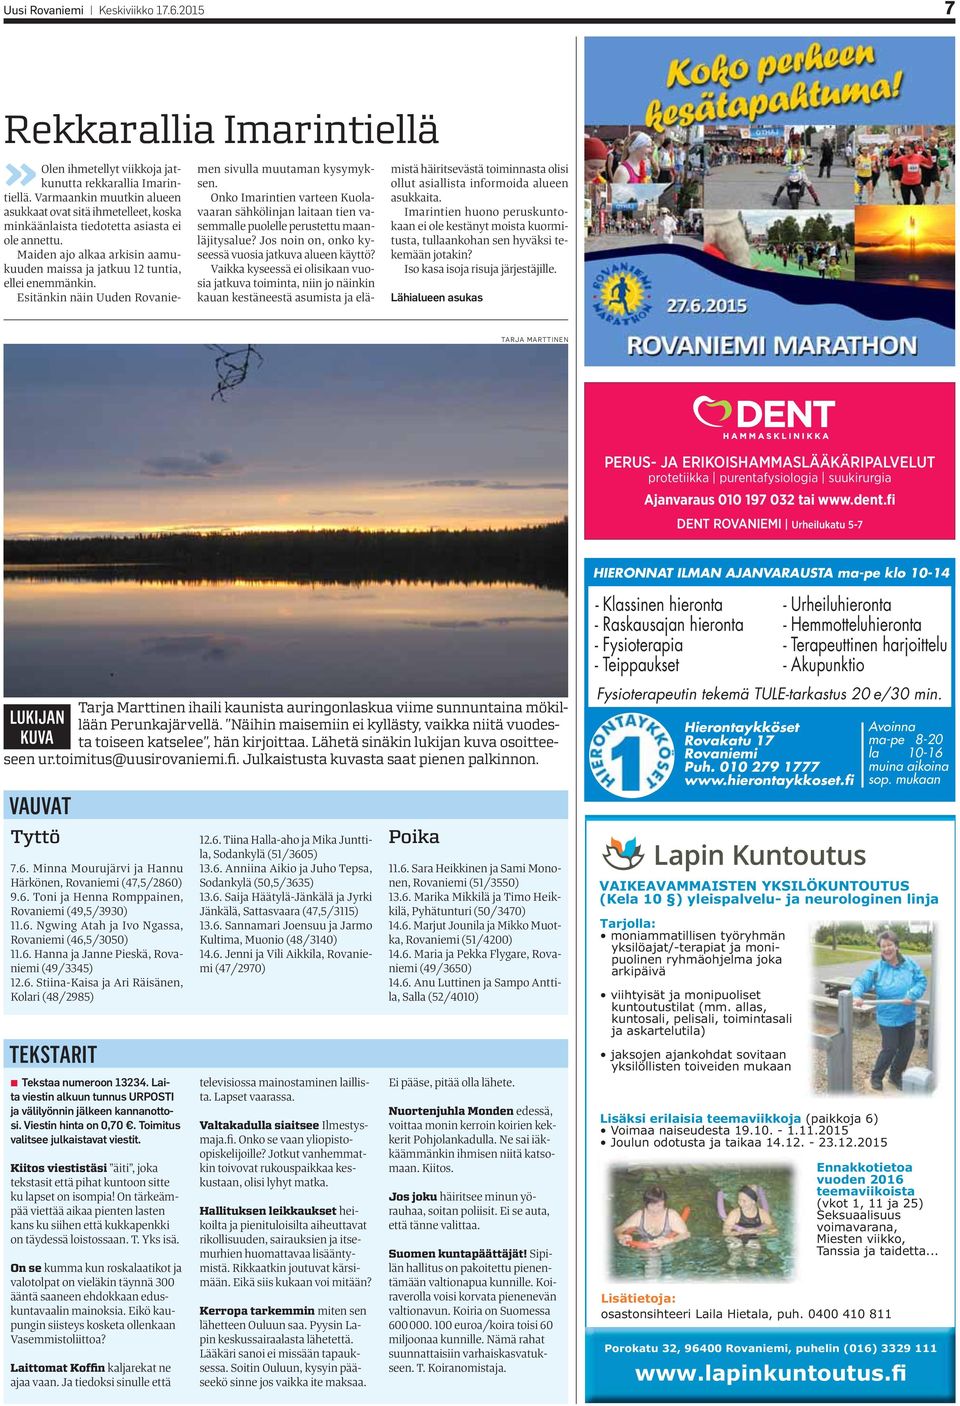 Esitänkin näin Uuden Rovaniemen sivulla muutaman kysymyksen. Onko Imarintien varteen Kuolavaaran sähkölinjan laitaan tien vasemmalle puolelle perustettu maanläjitysalue?